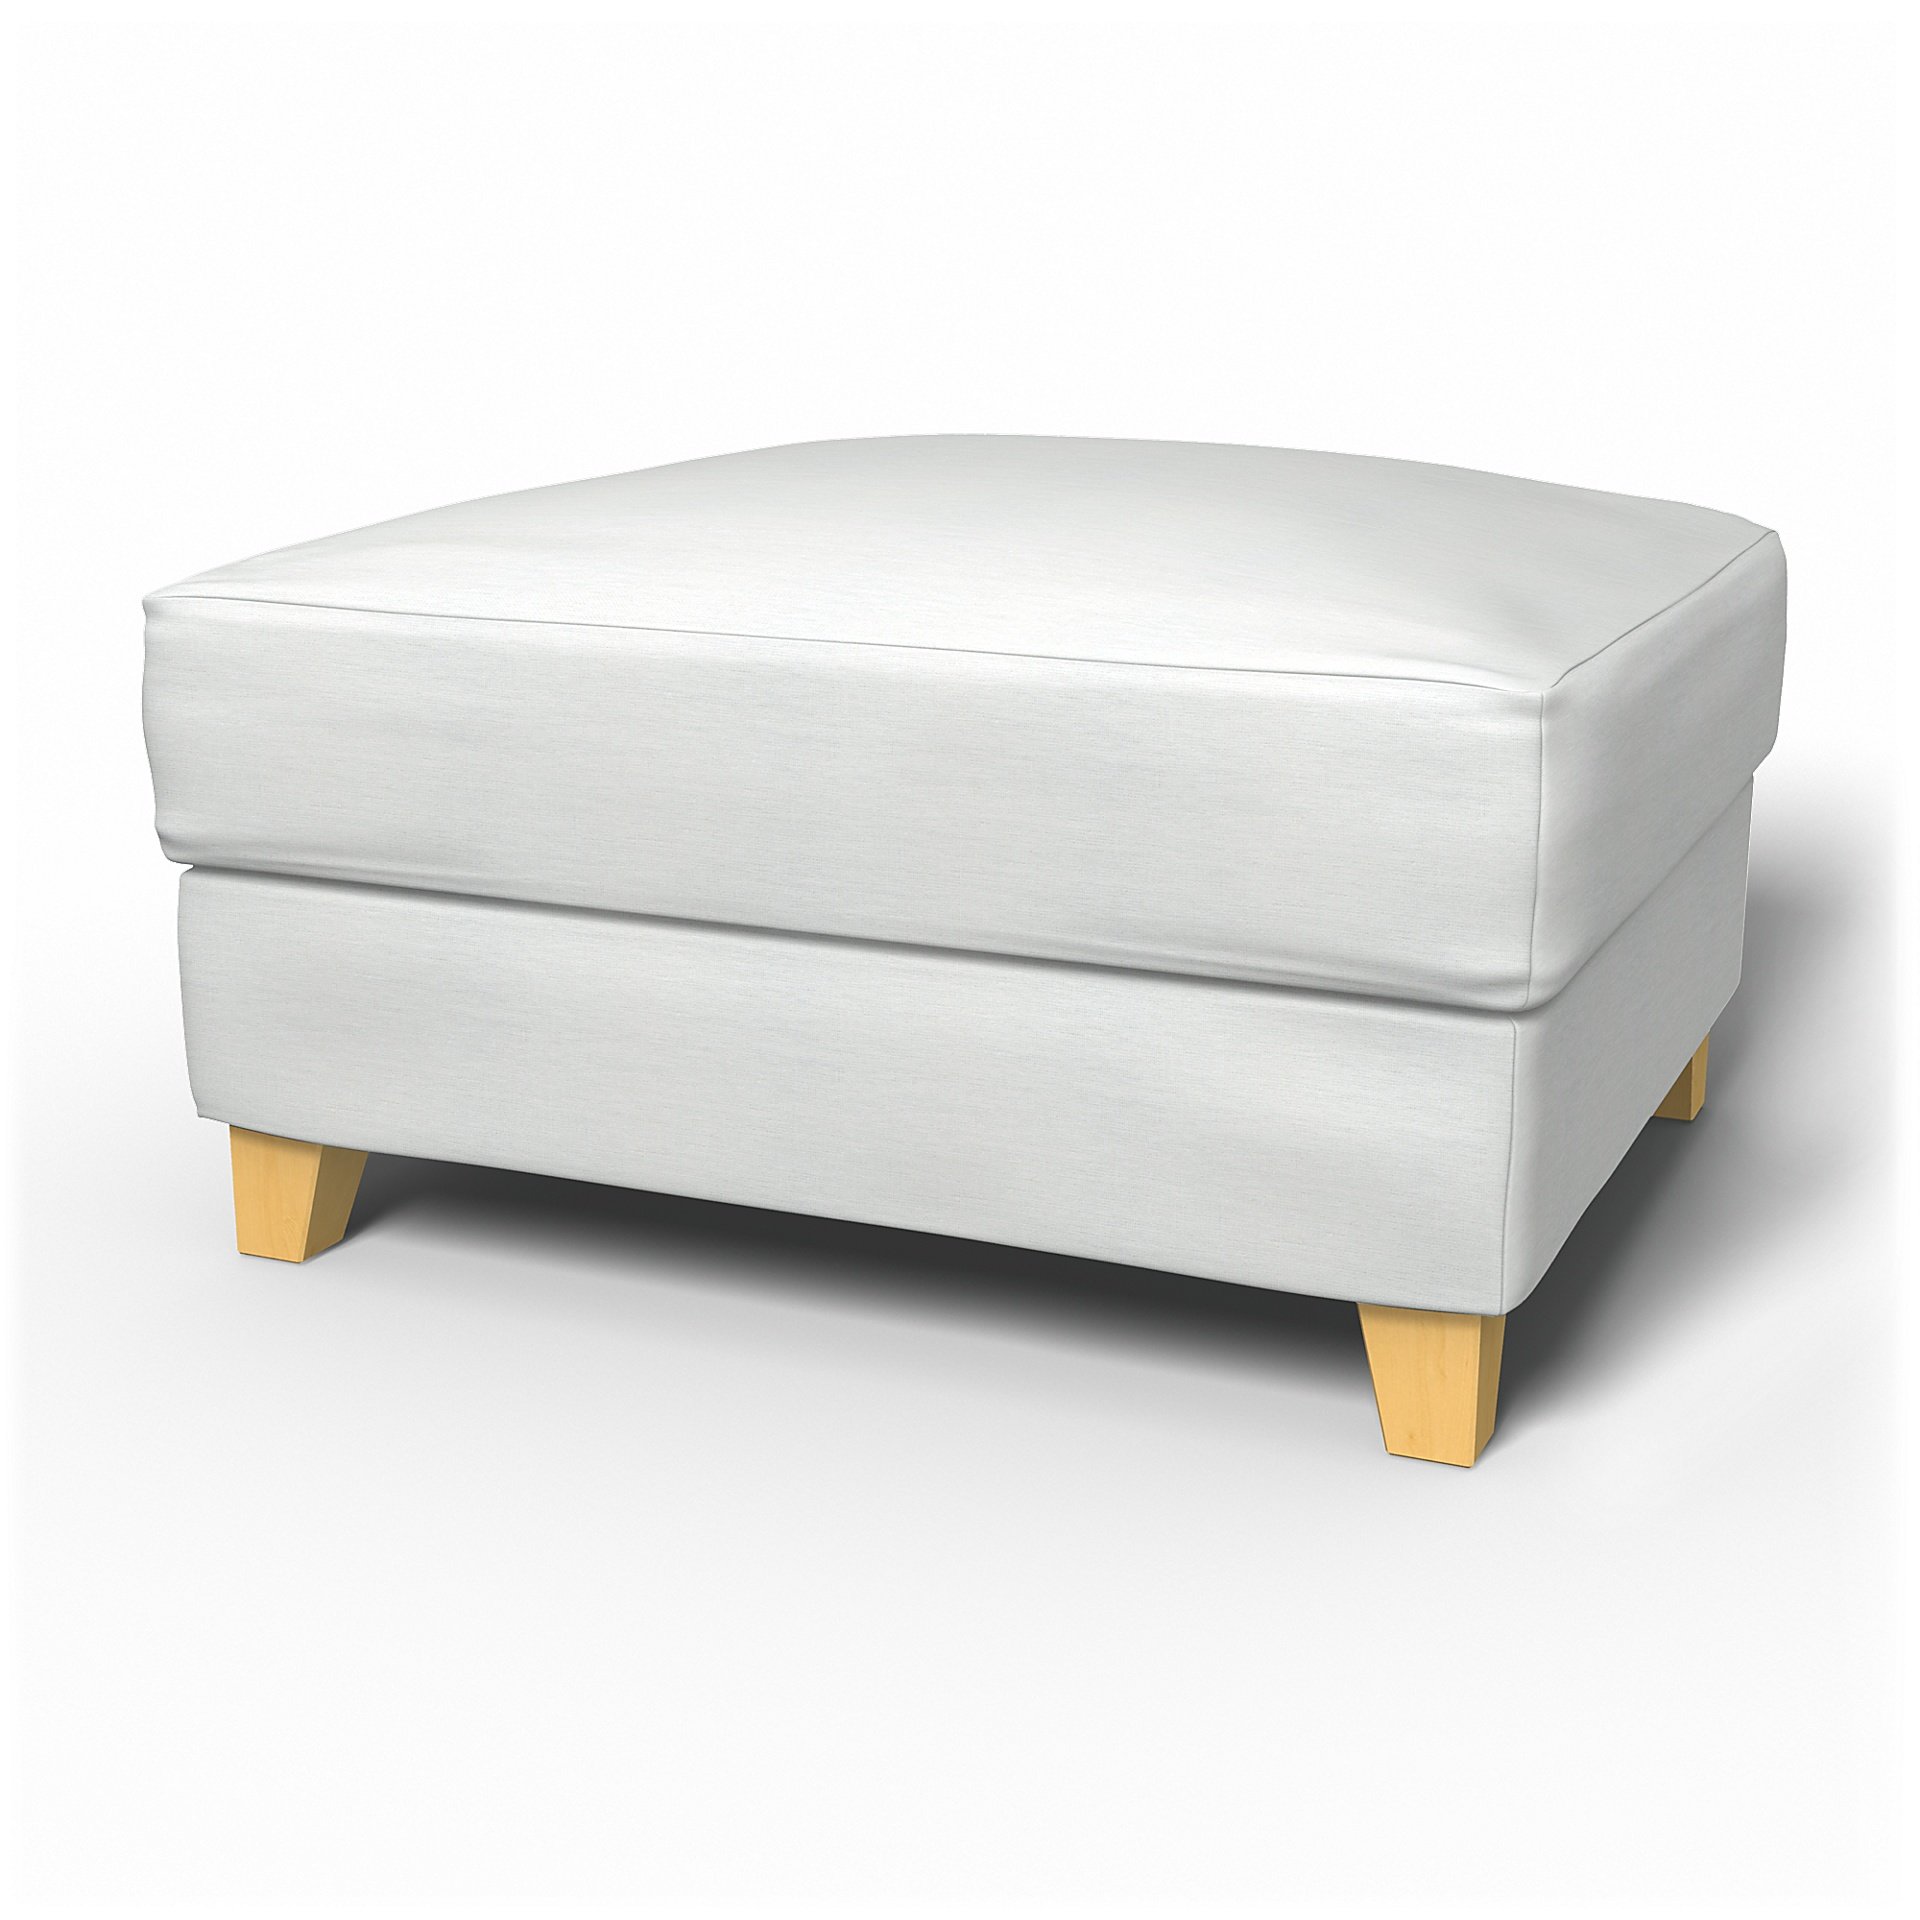 IKEA - Backa Footstool Cover, White, Linen - Bemz